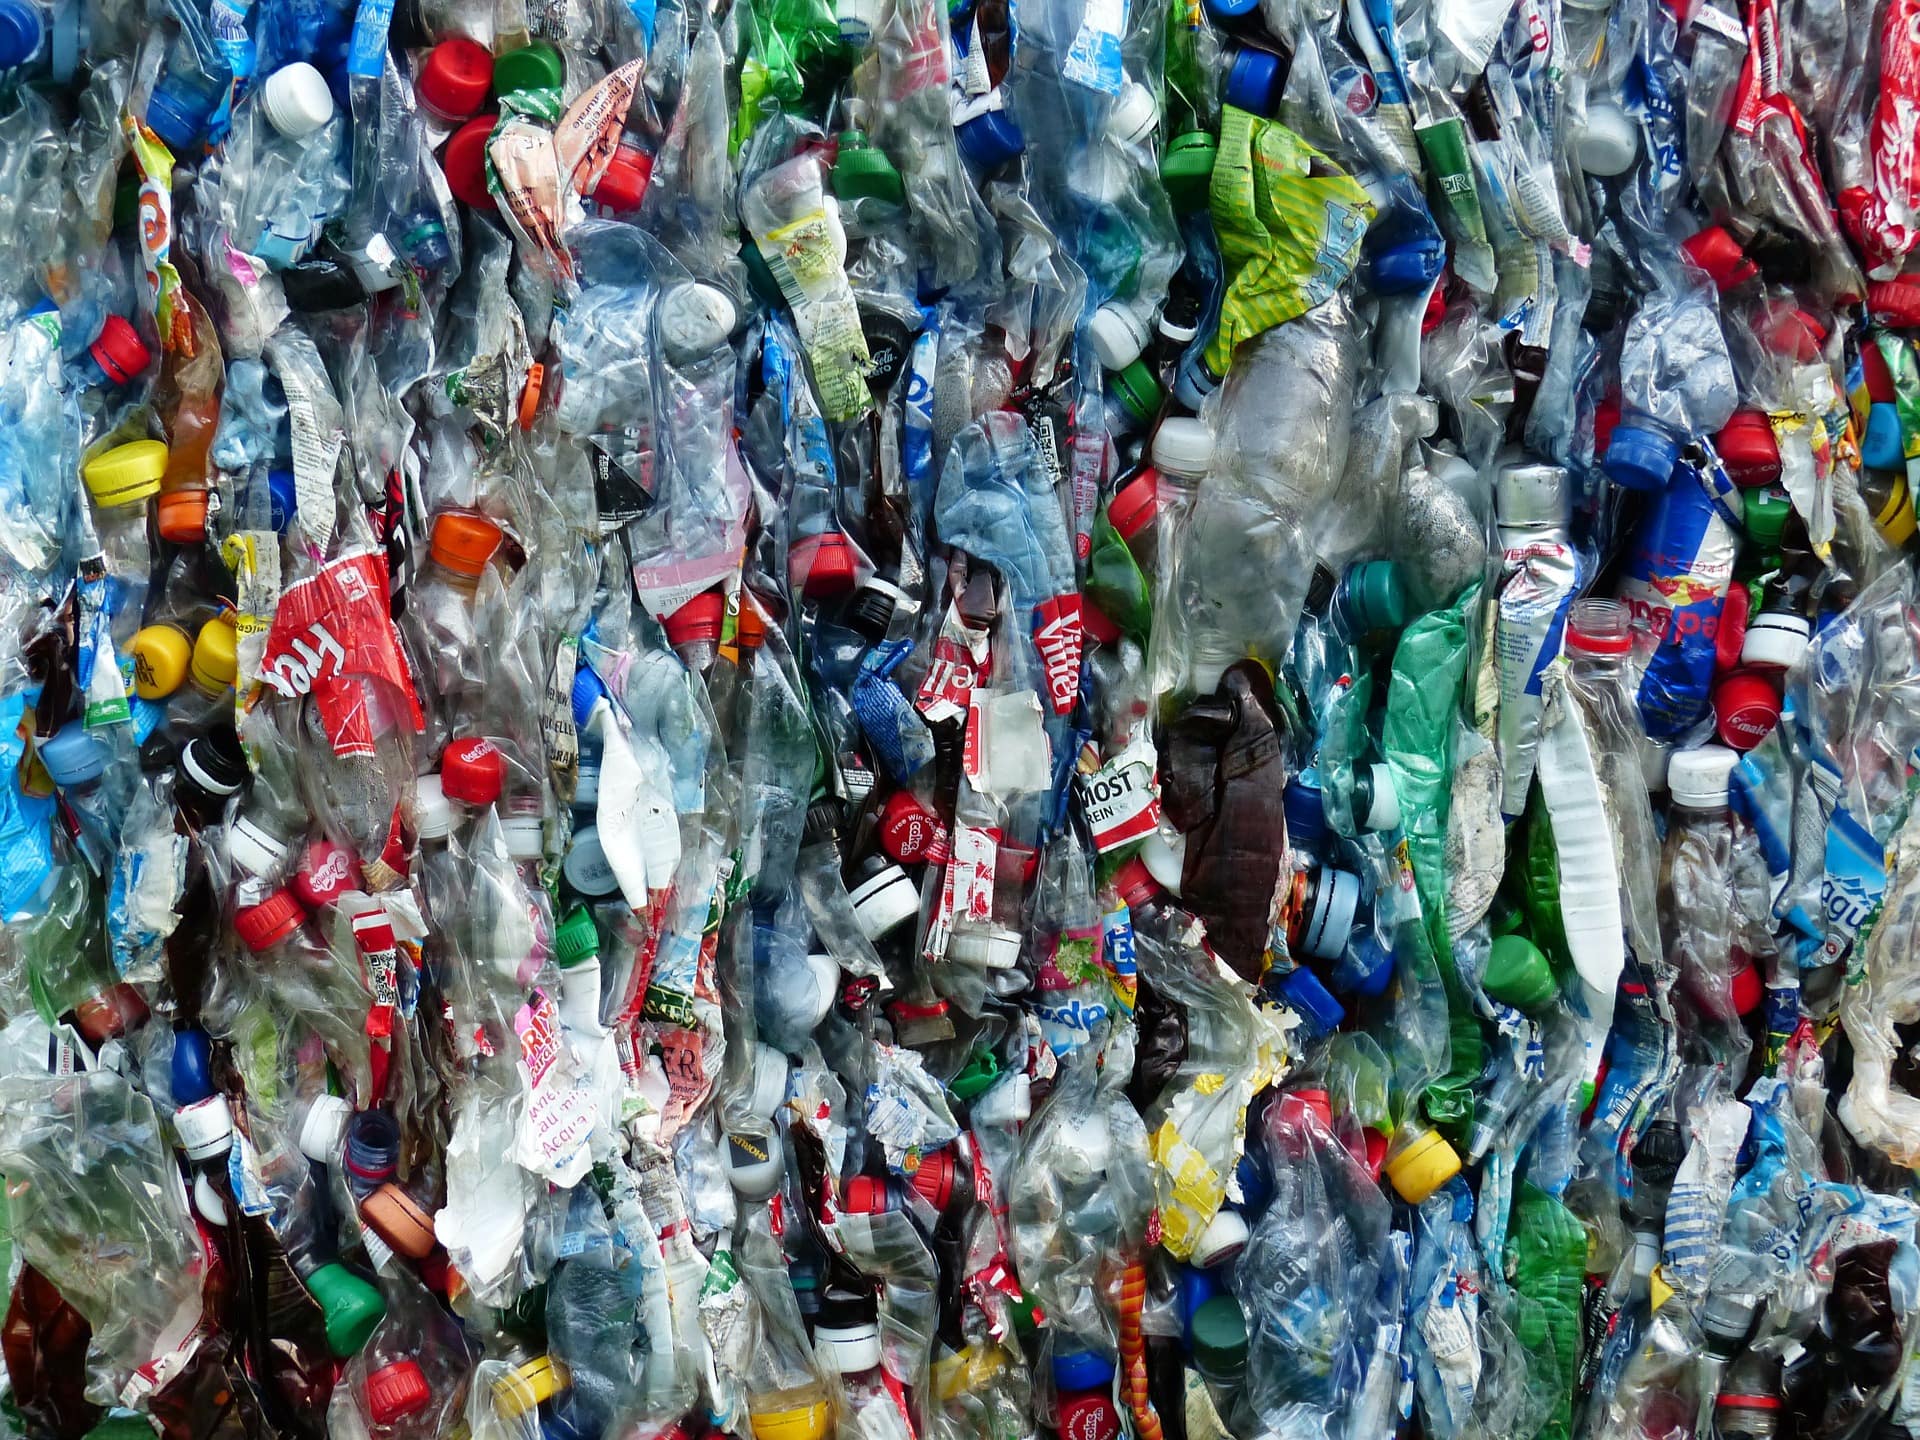 ЖКХ, Томские новости, переработка сортировка отходы мусор пластик металл как сортировать отходы К следующему году в Томской области заработает крупный мусоросортировочный комплекс